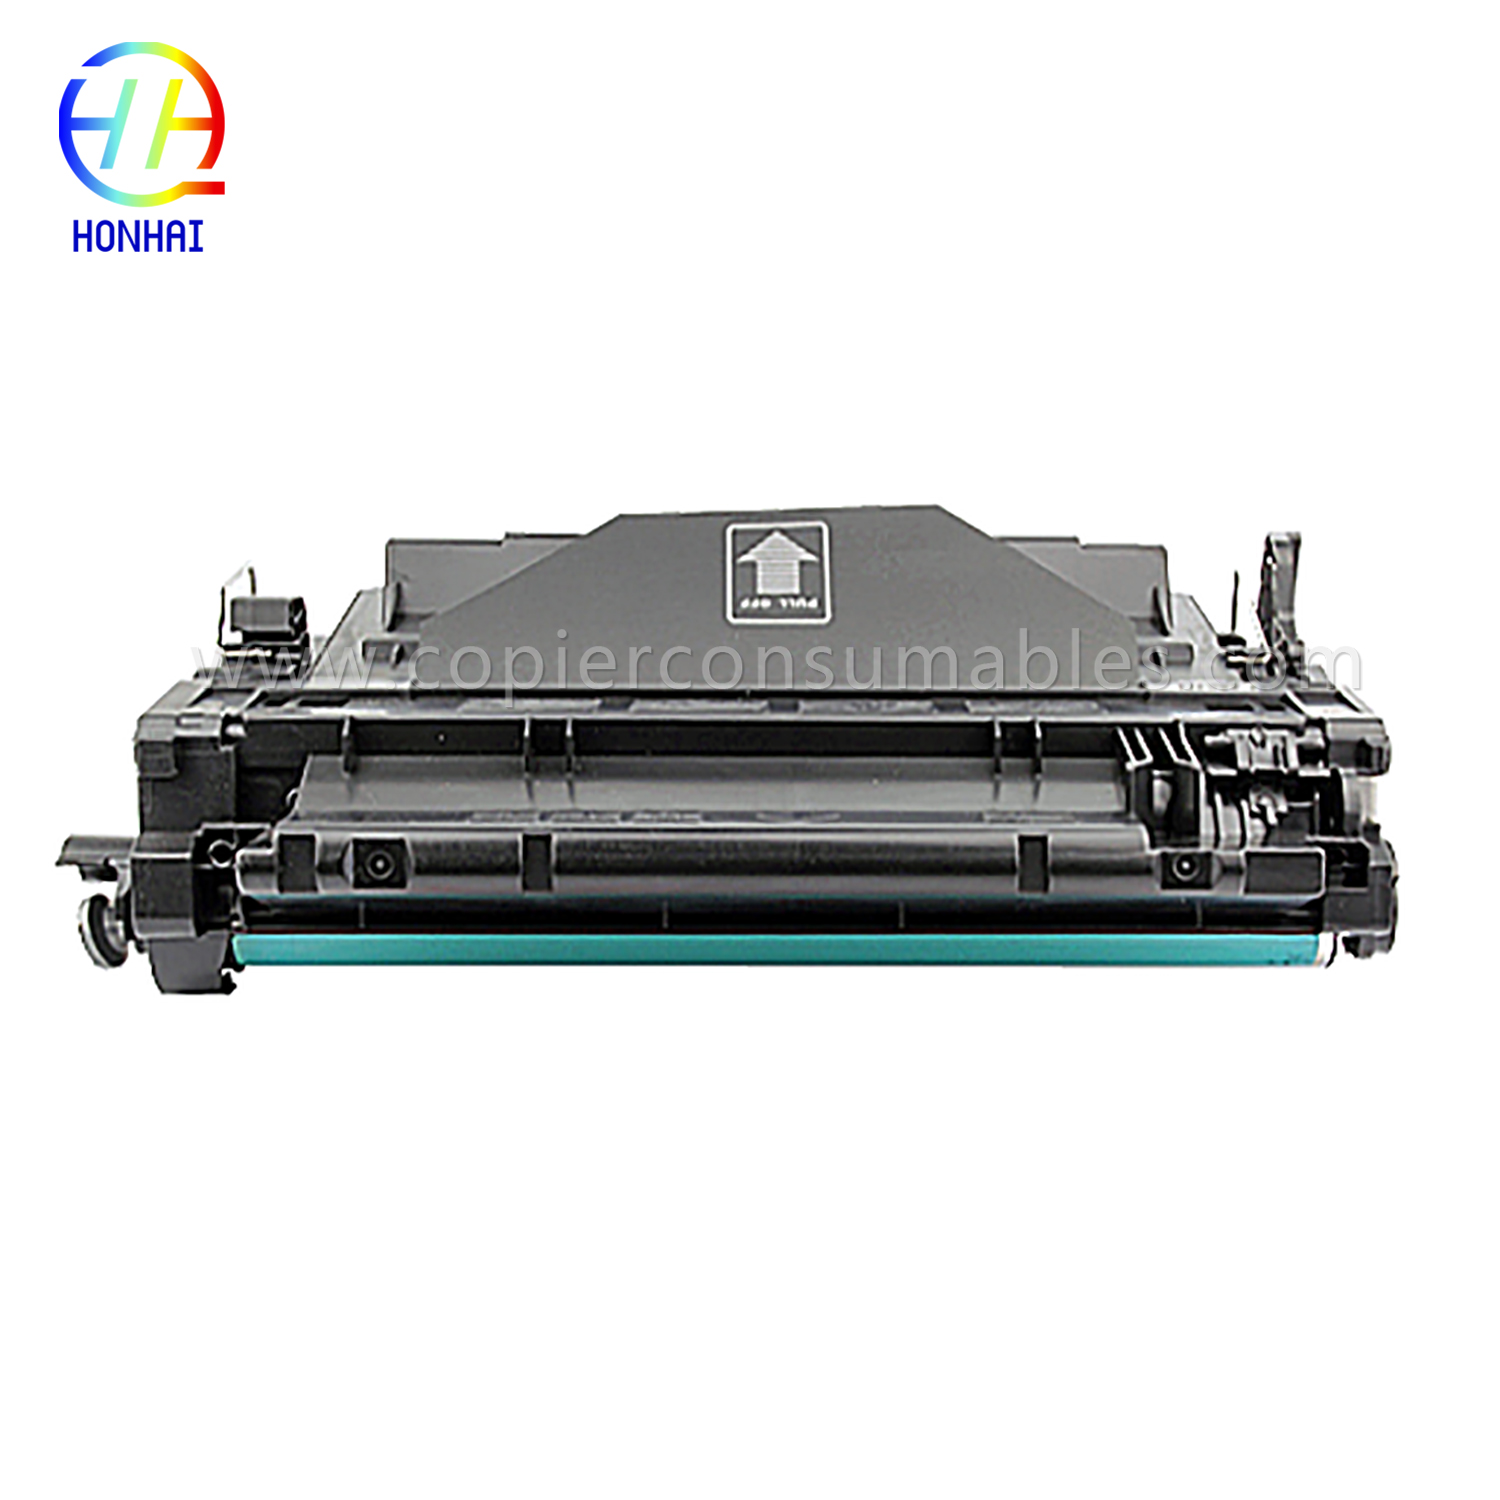 Έγχρωμες κασέτες γραφίτη HP LaserJet LaserJet Pro MFP M521dn Enterprise P3015 (CE255X) -1 (1) 拷贝